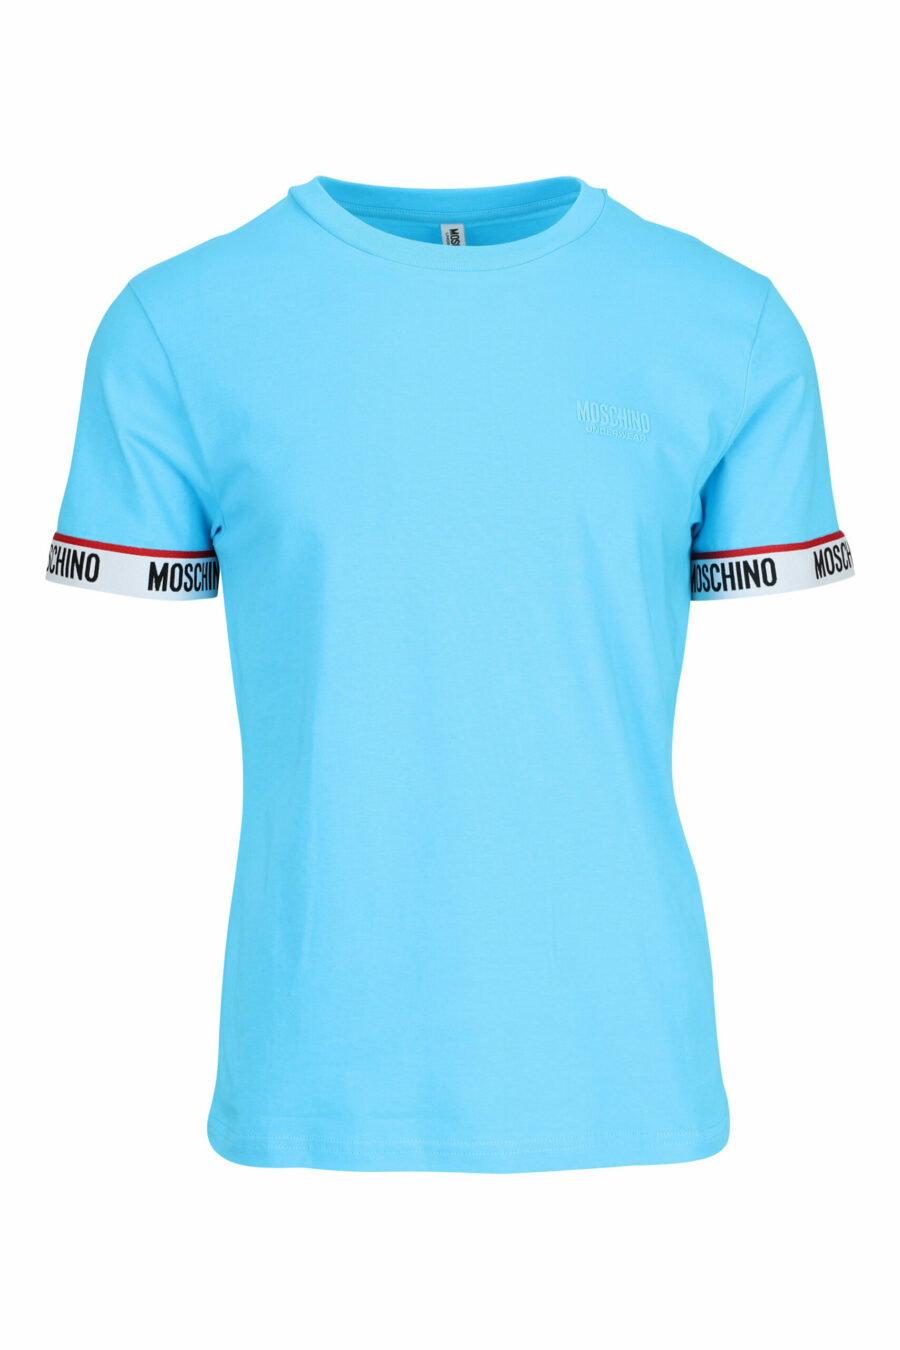 Tee-shirt bleu clair avec logo blanc sur les manches - 667113604626